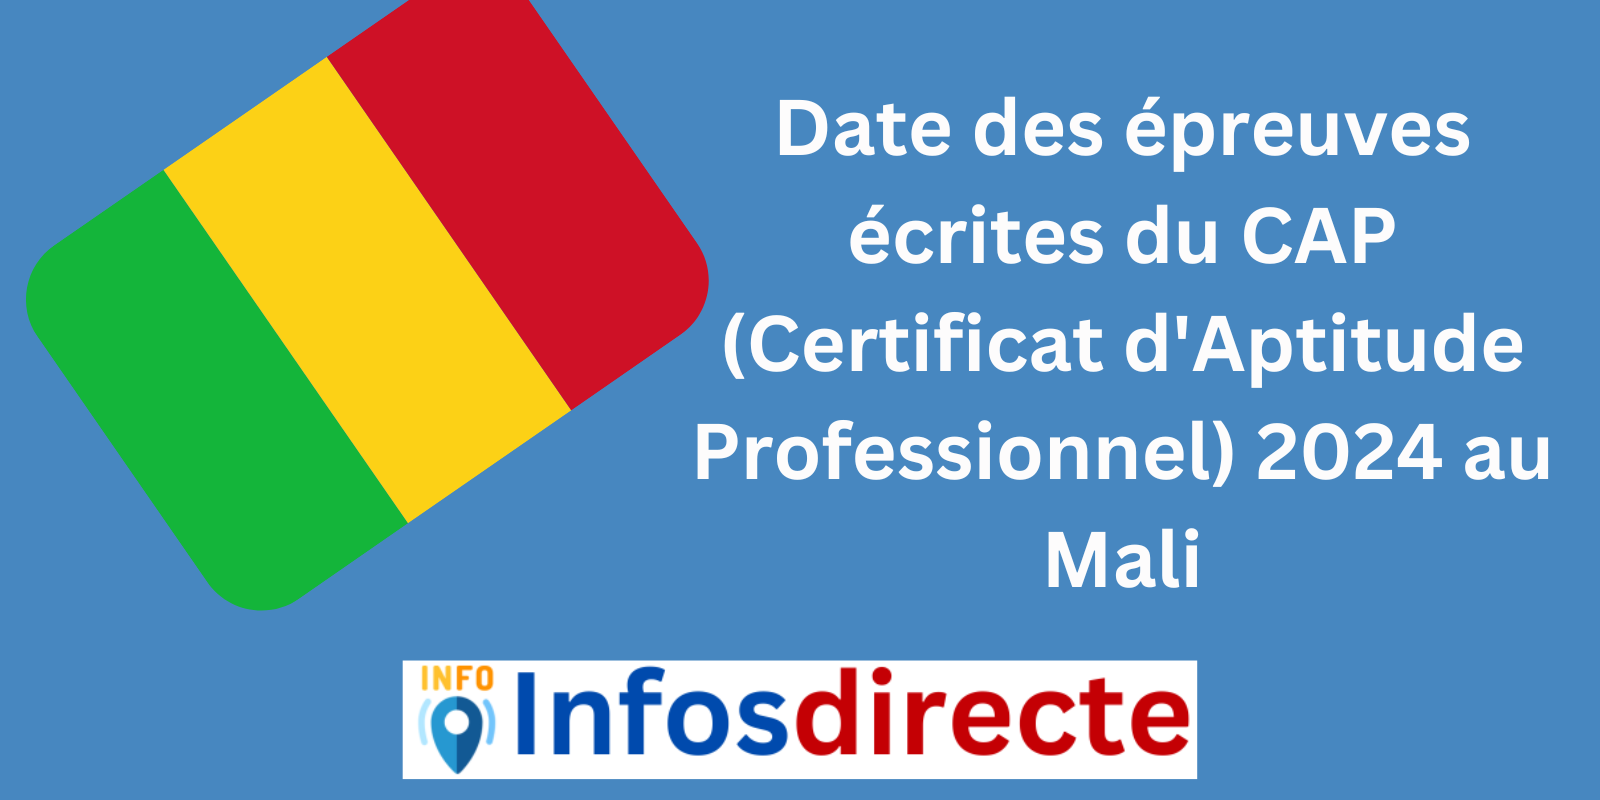 Date des épreuves écrites du CAP (Certificat d'Aptitude Professionnel) 2024 au Mali